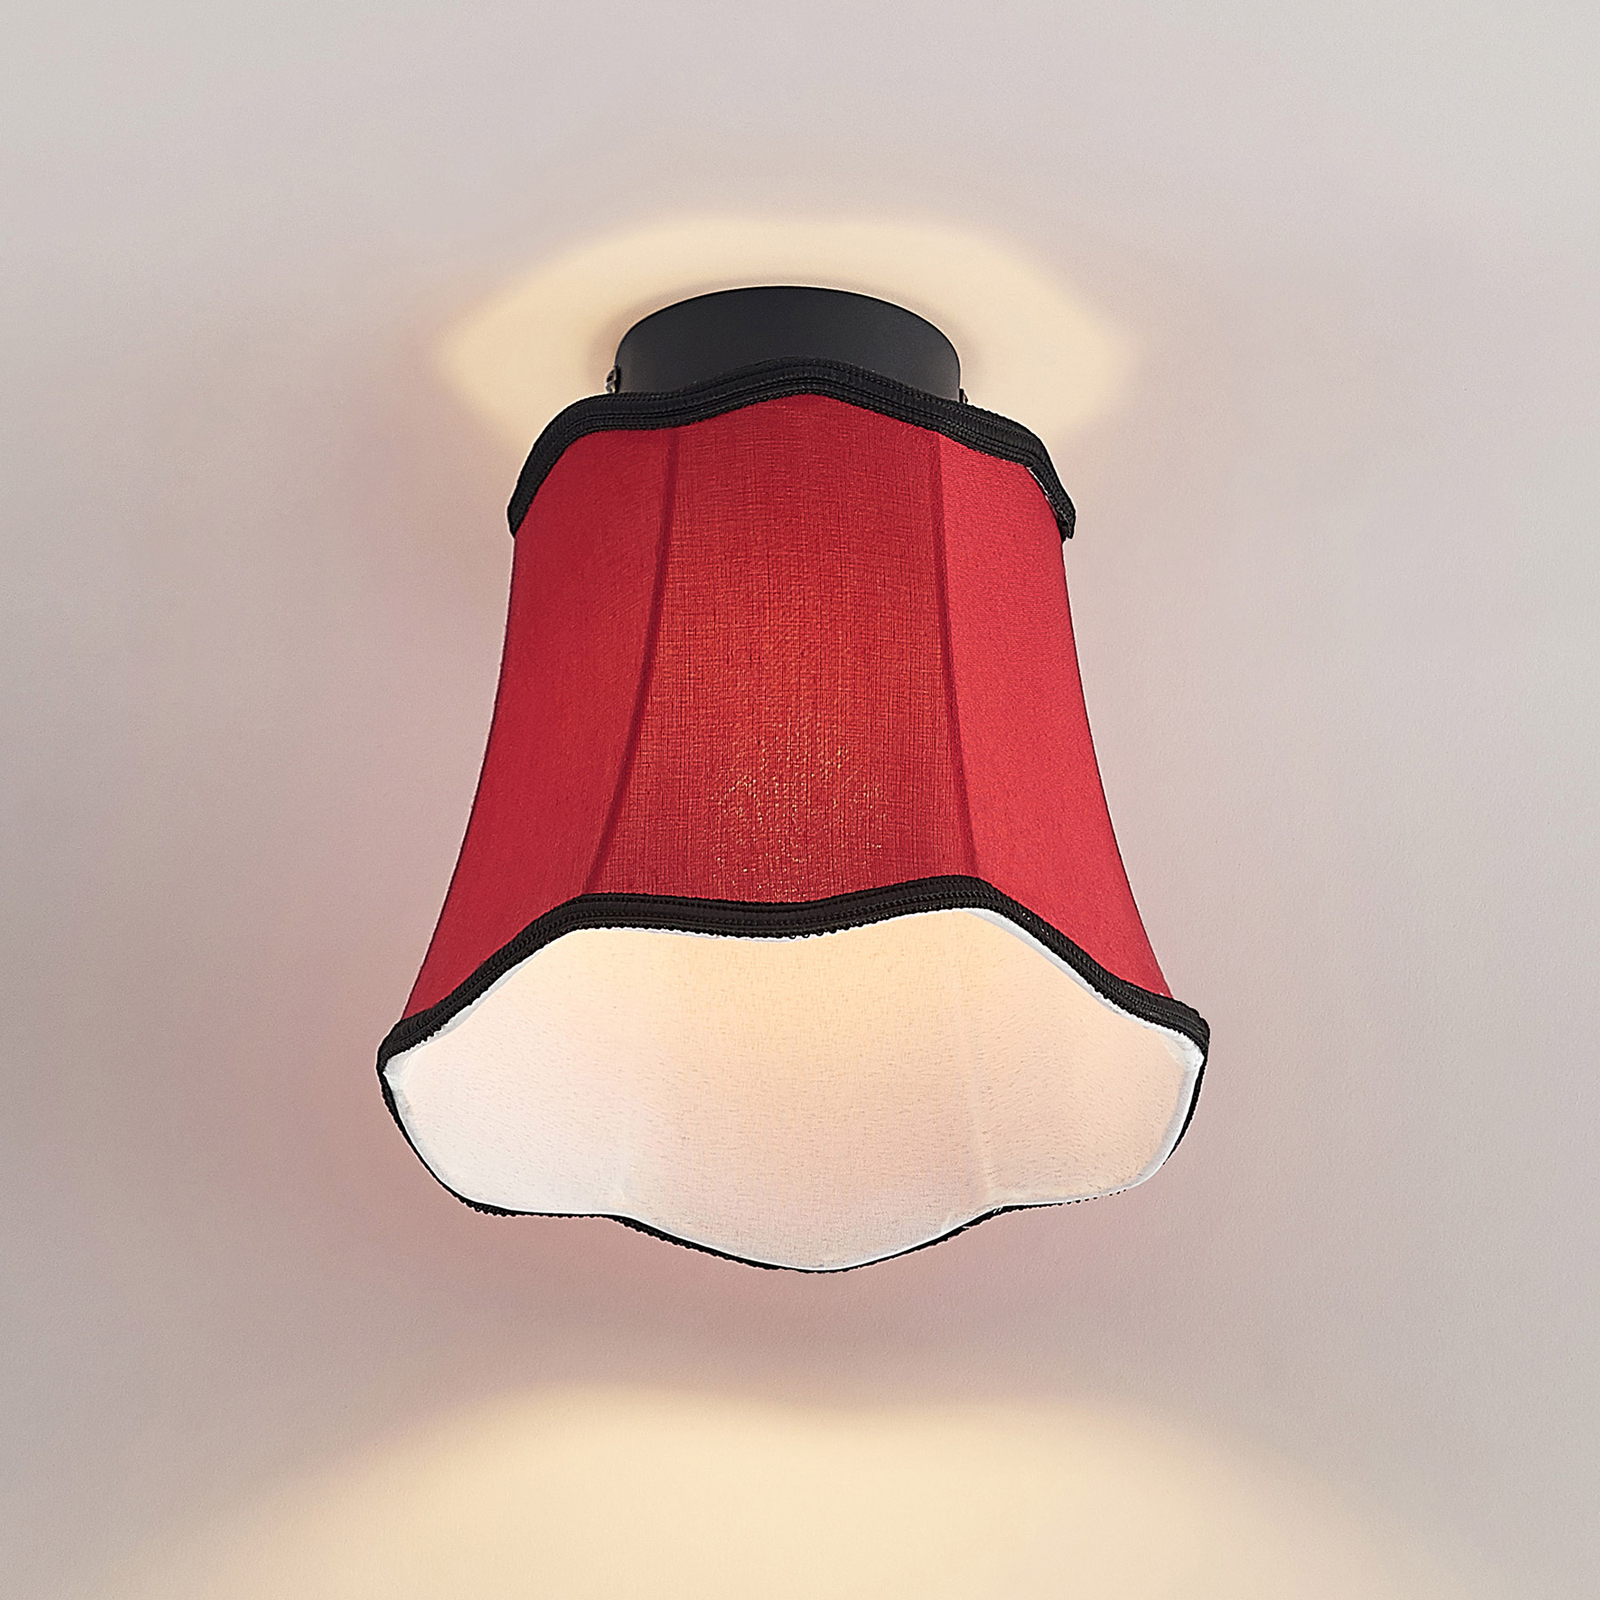 Lucande Binta fabric ceiling lamp vintage rust red